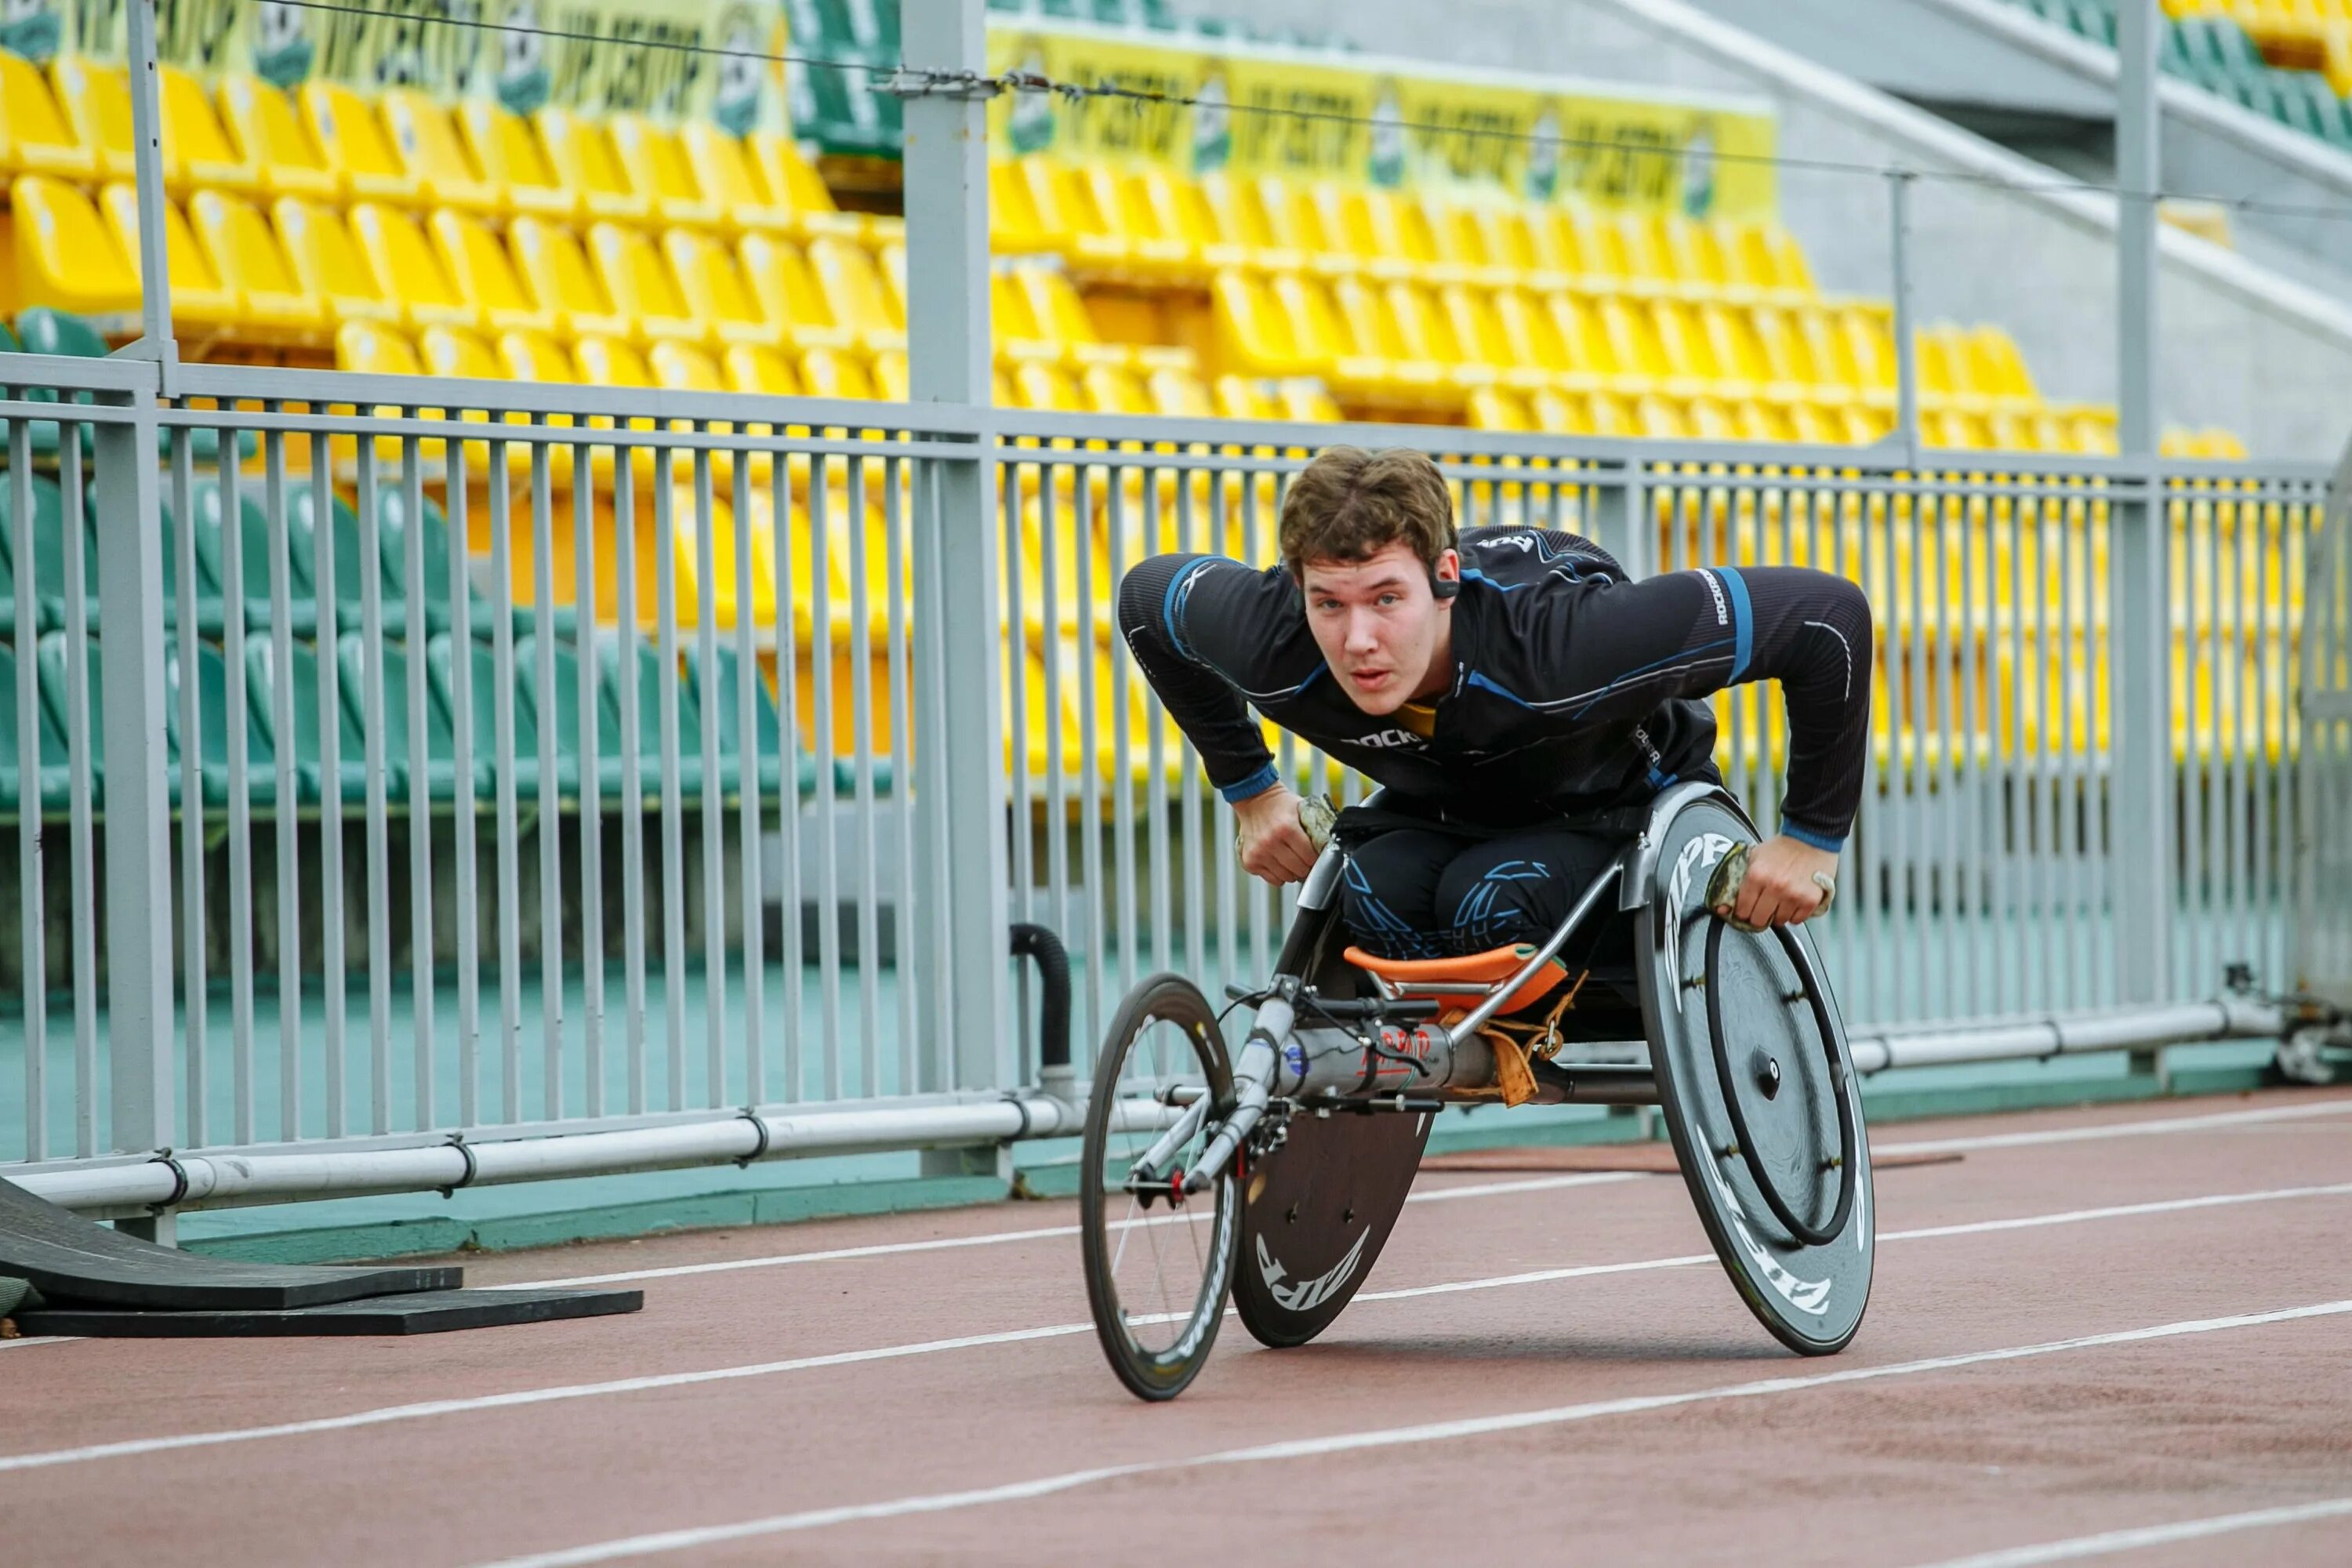 Инвалиды занимаются спортом. Спортсмен колясочник. Спорт для инвалидов. Спорт для людей с ограниченными возможностями. Инвалиды колясочники спортсмены.